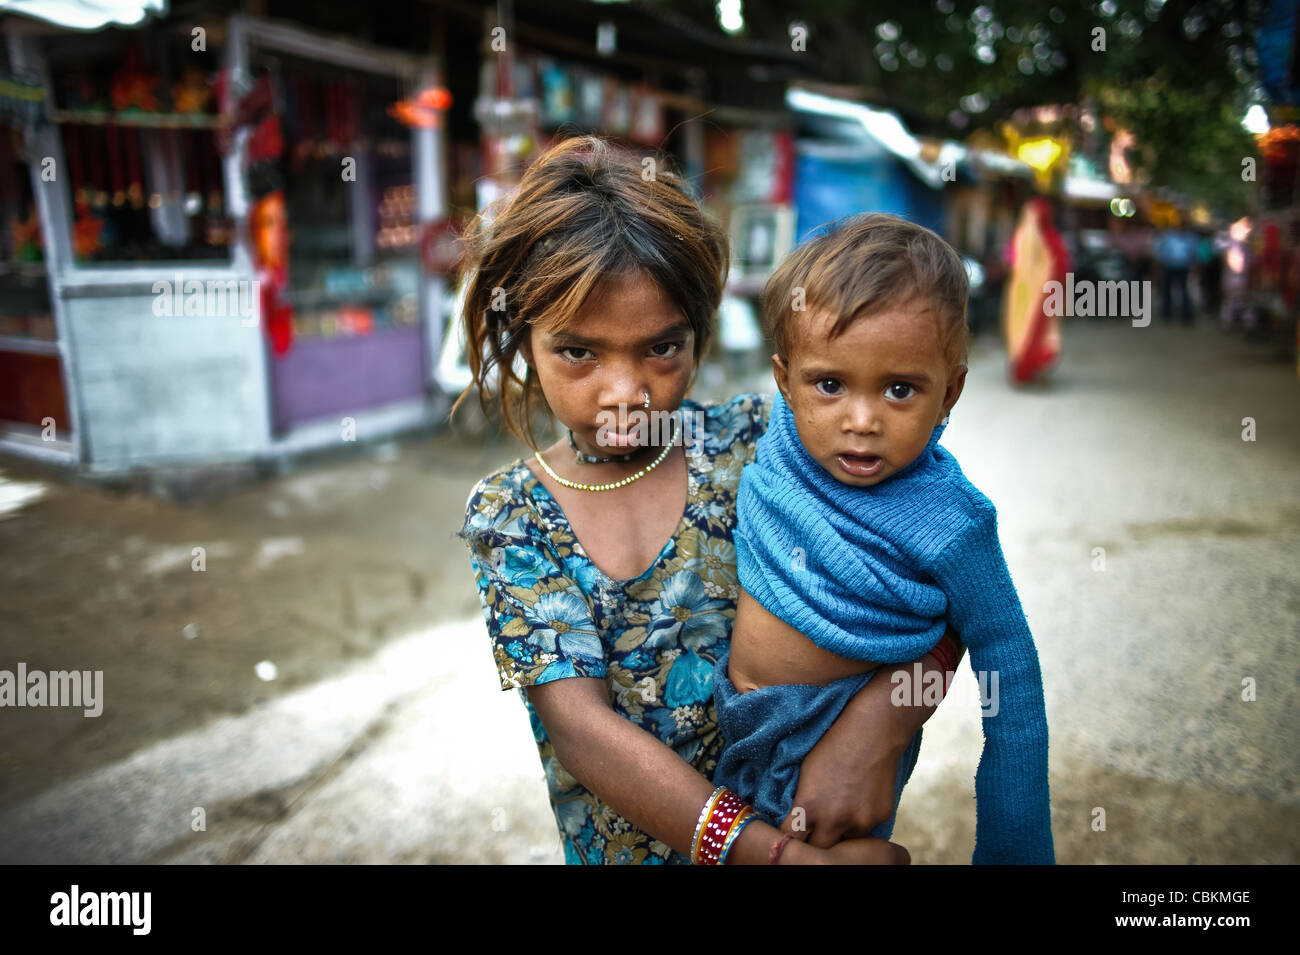 Indian Glance, Street scene in Delhi Stock Photo